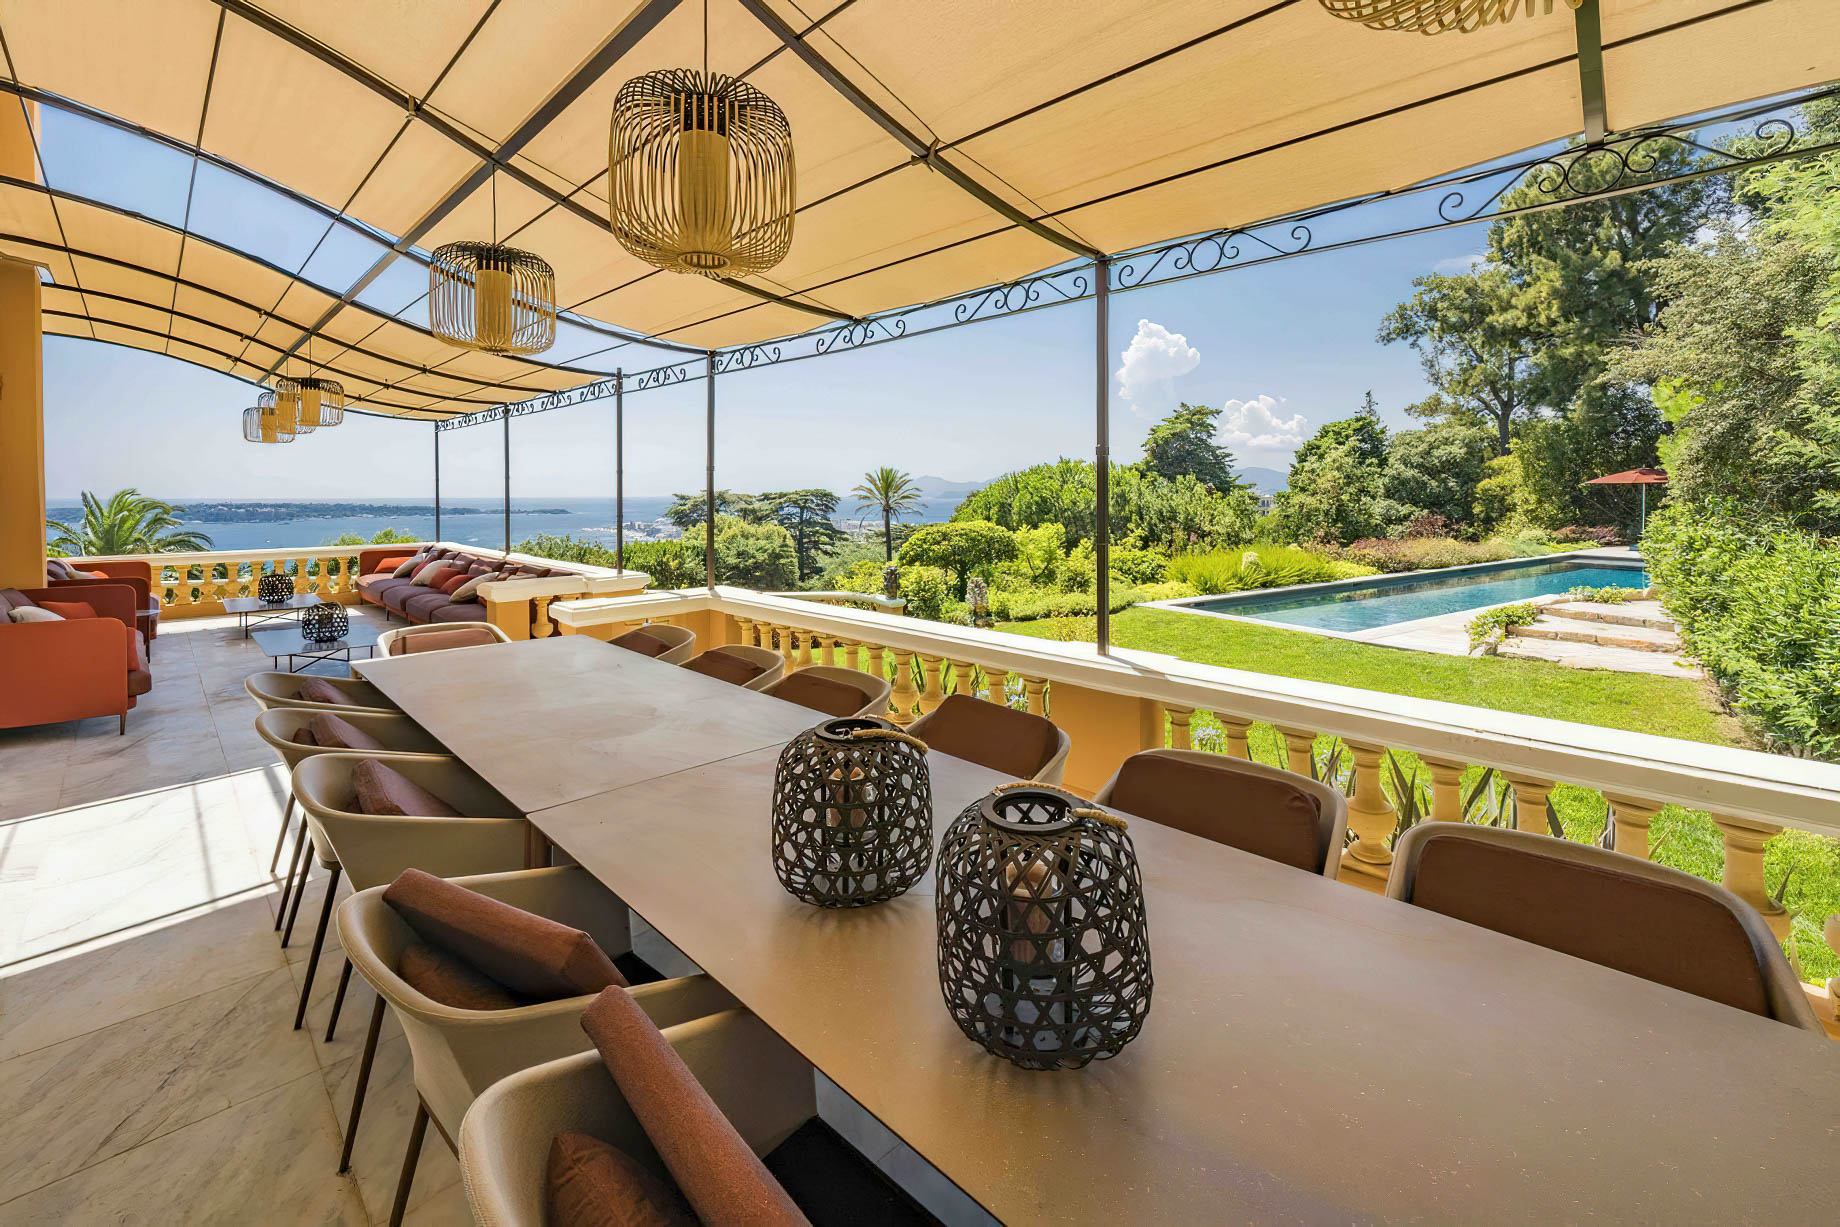 Villa Eleganza - Cannes France - French Riviera Luxury Villa Rentals